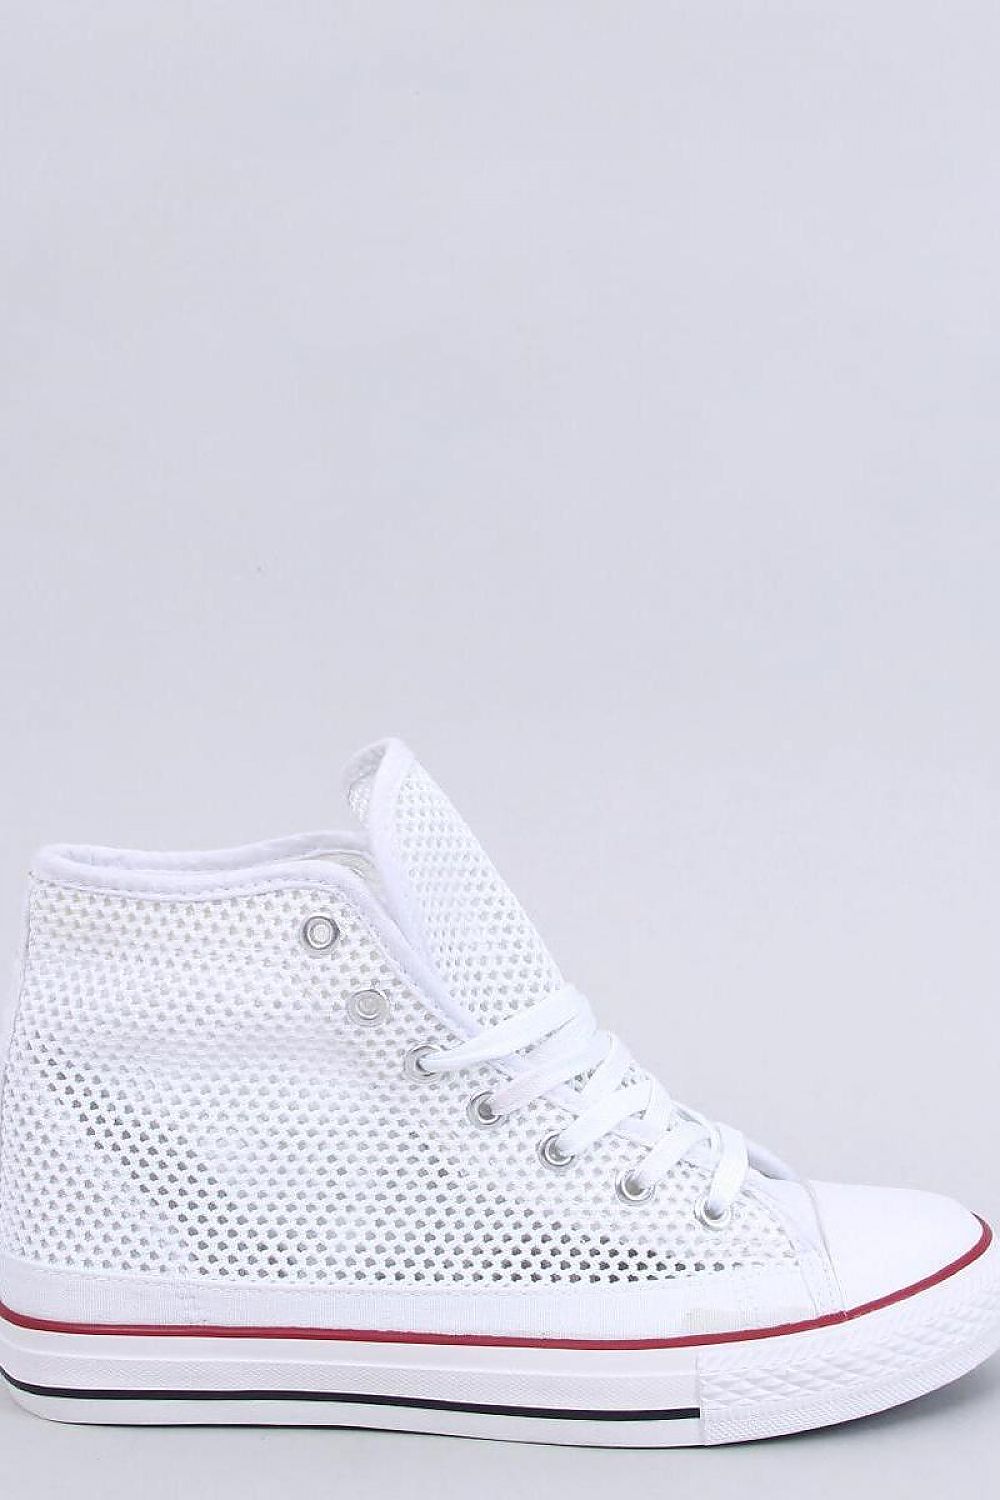 TEEK - White Mesh Sneakers SHOES TEEK MH 6  